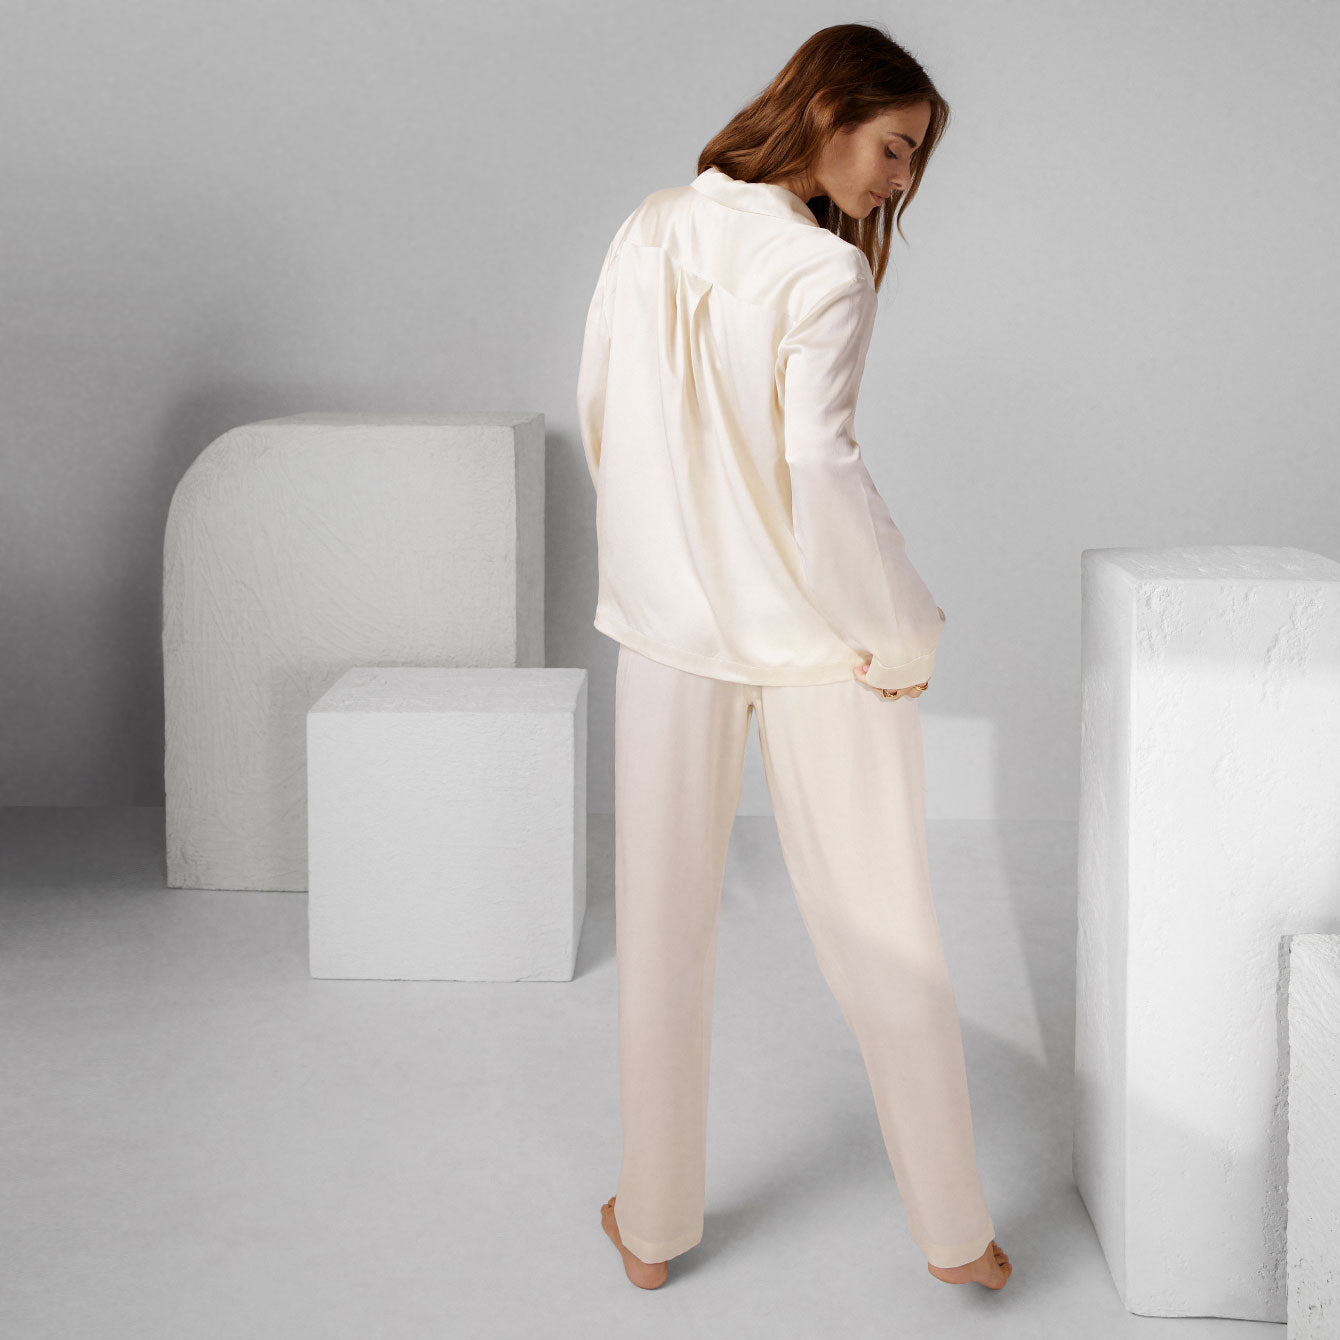 Washable Silk Long Sleeve Pant Set - #Swan White